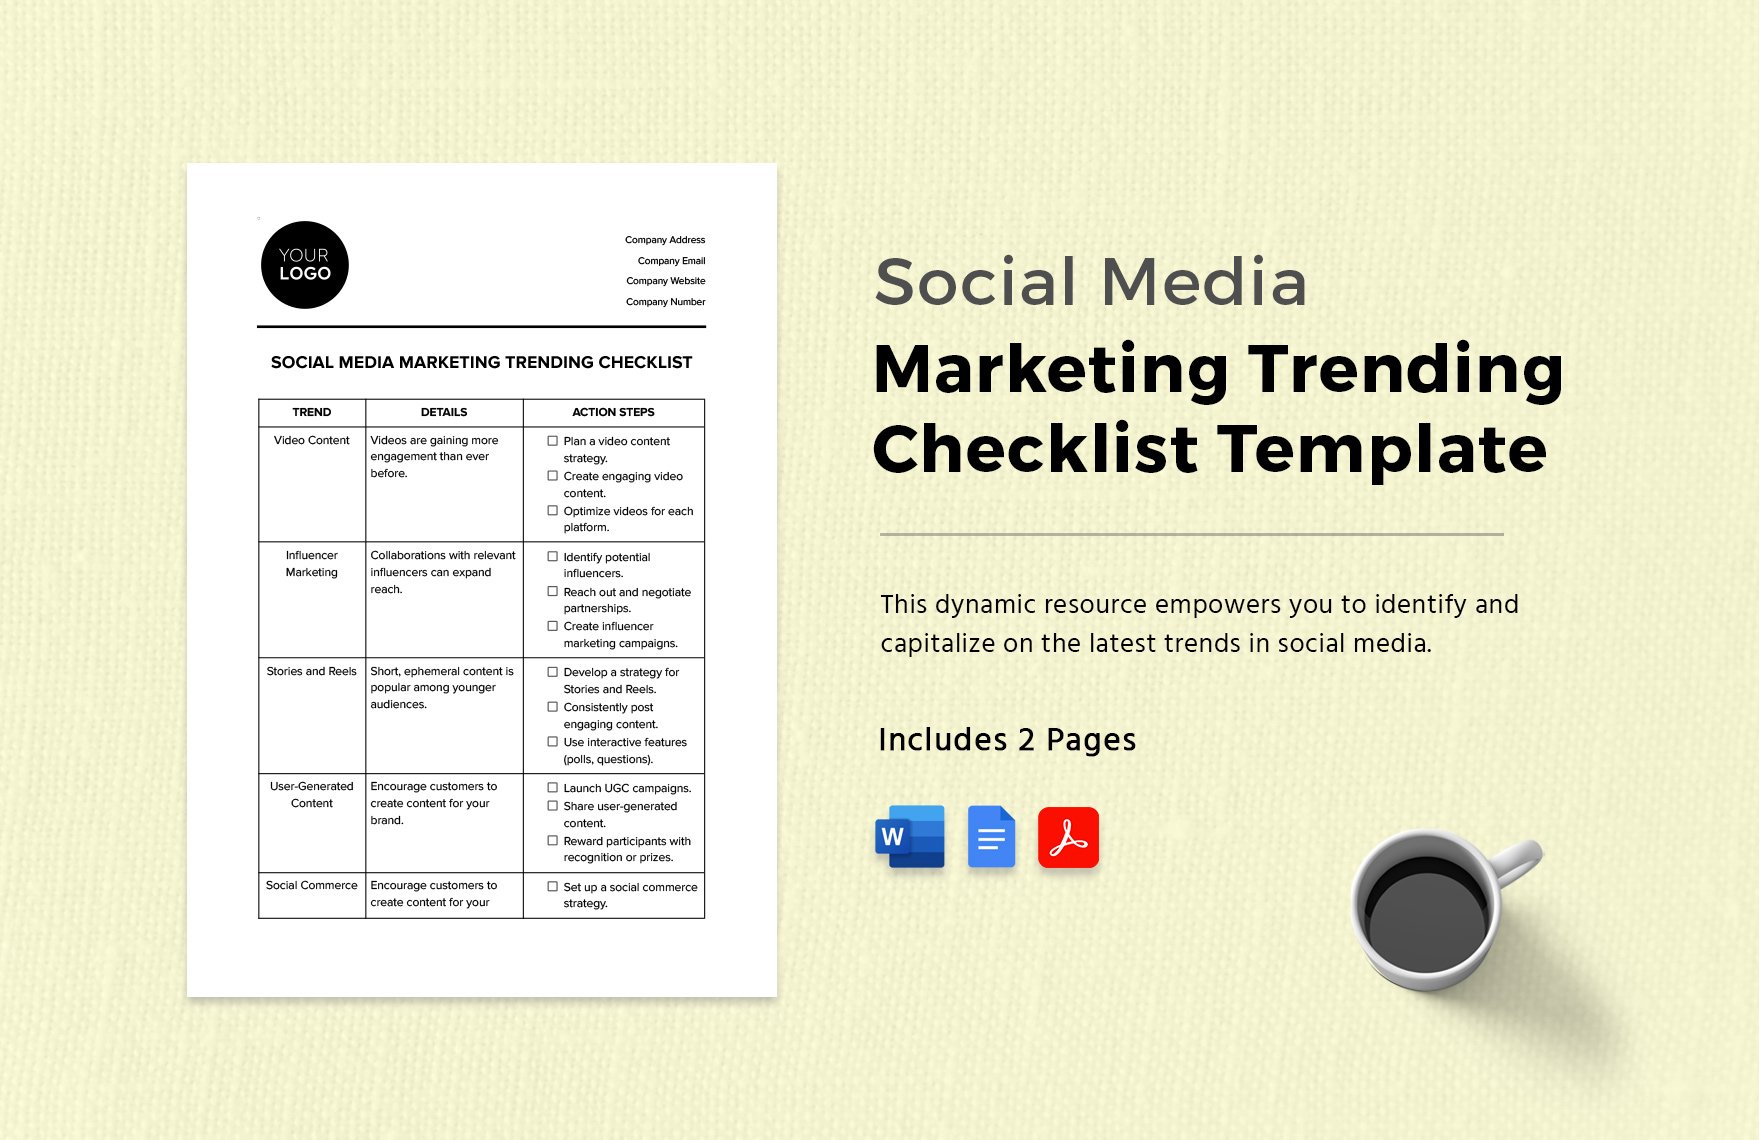 Social Media Marketing Trending Checklist Template